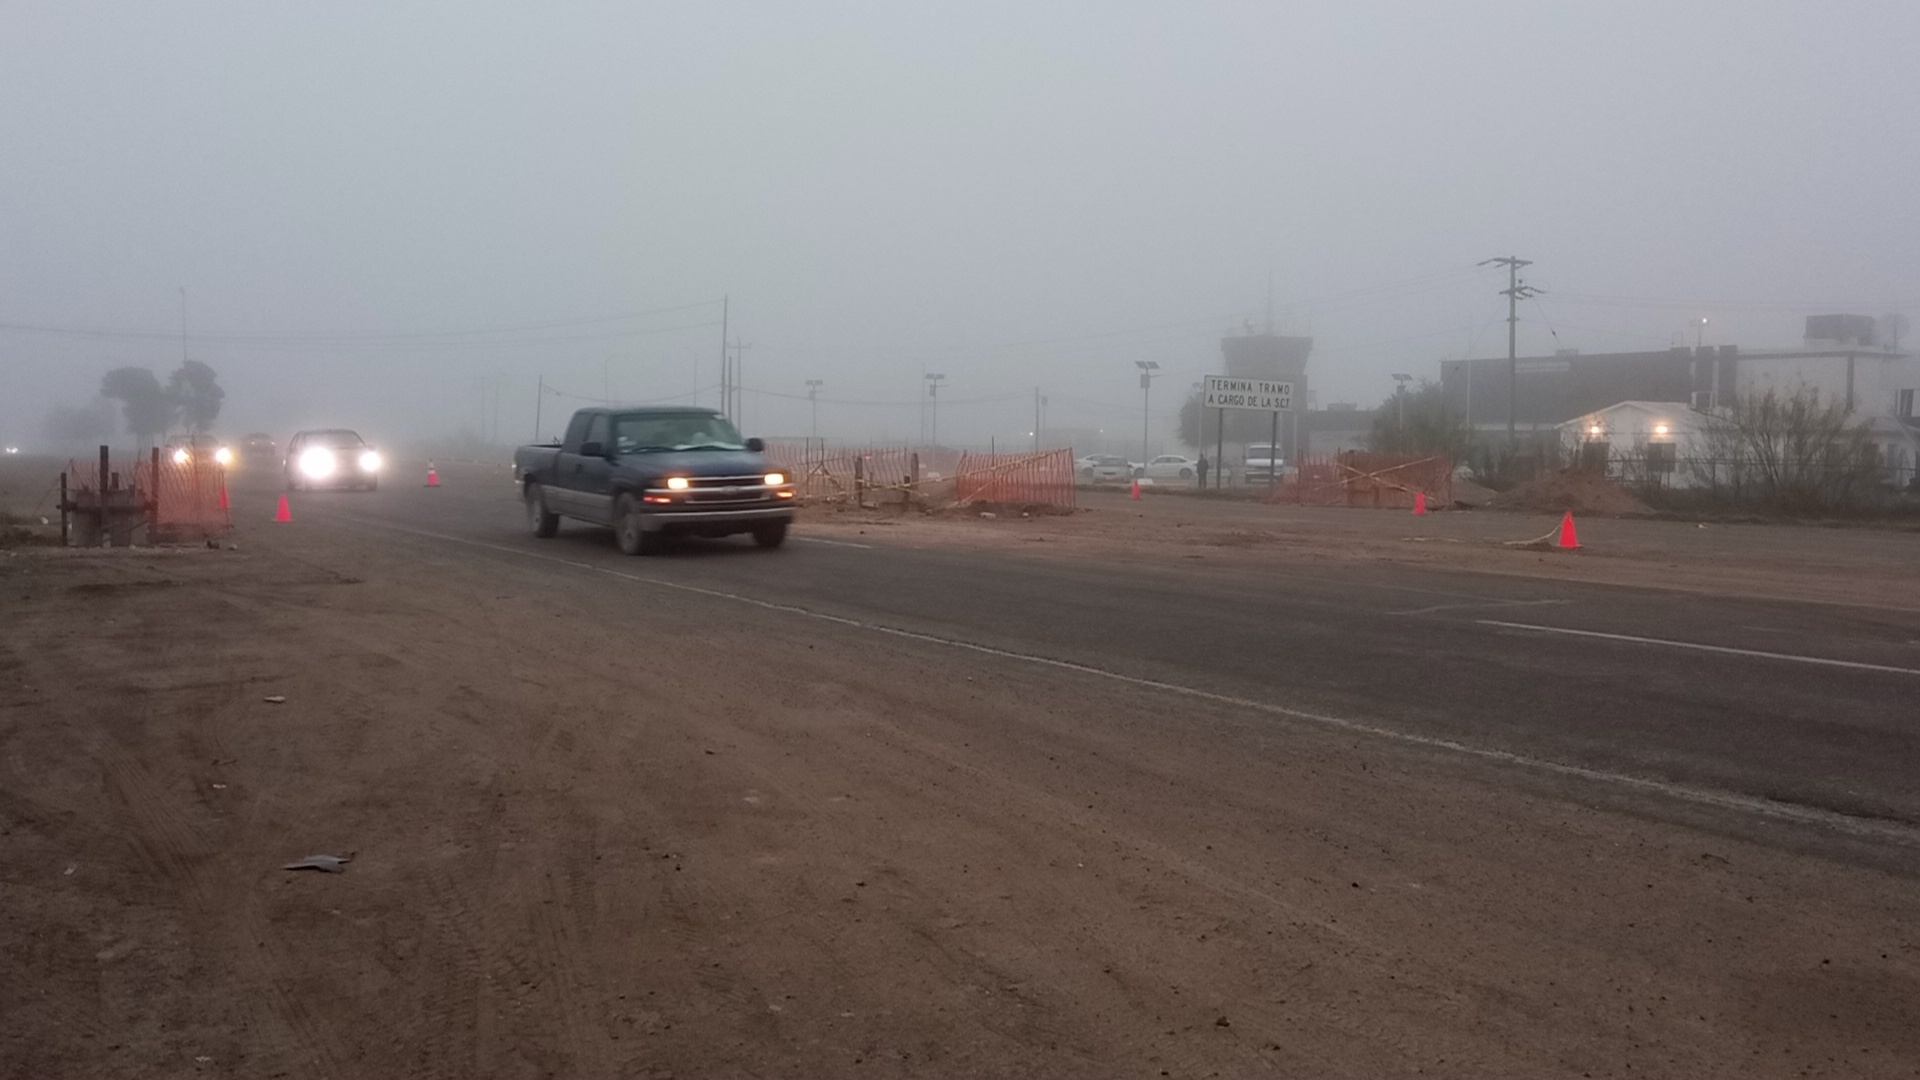 Conductores señalan que se tiene visibilidad hasta una distancia de 100 metros. (Foto: RENÉ ARELLANO / EL SIGLO COAHUILA)